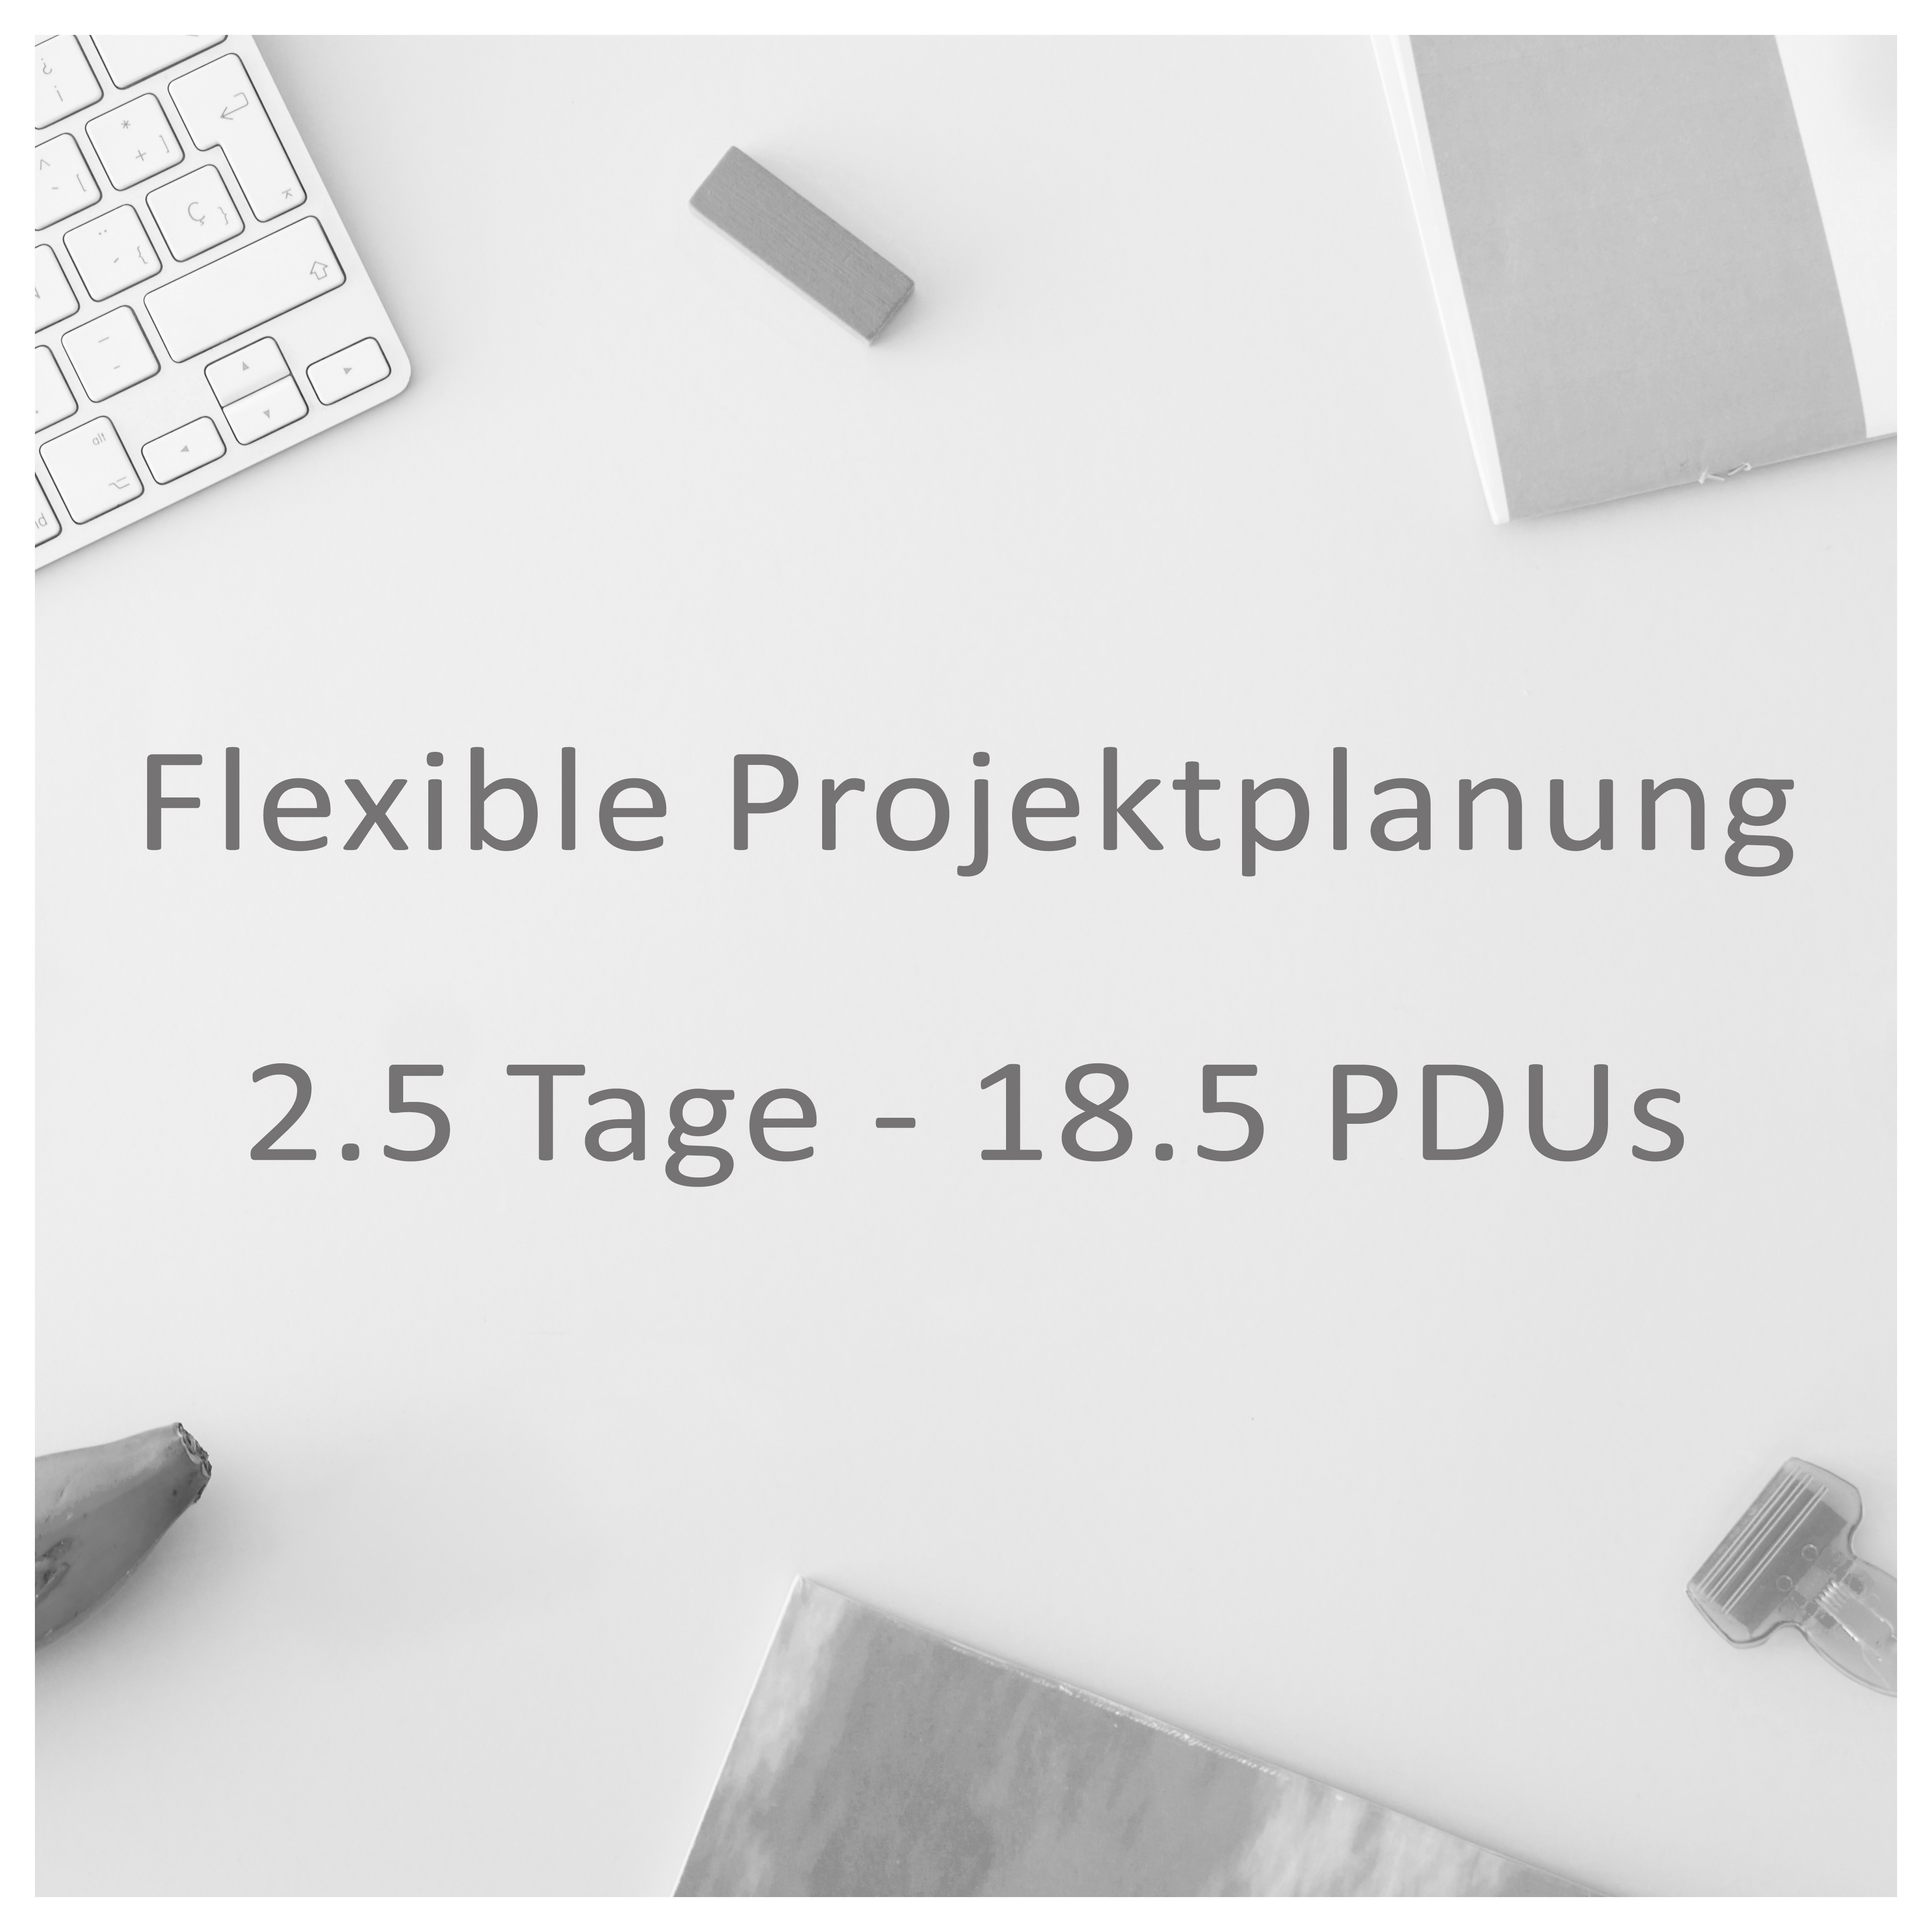 Flexible Projektplanung